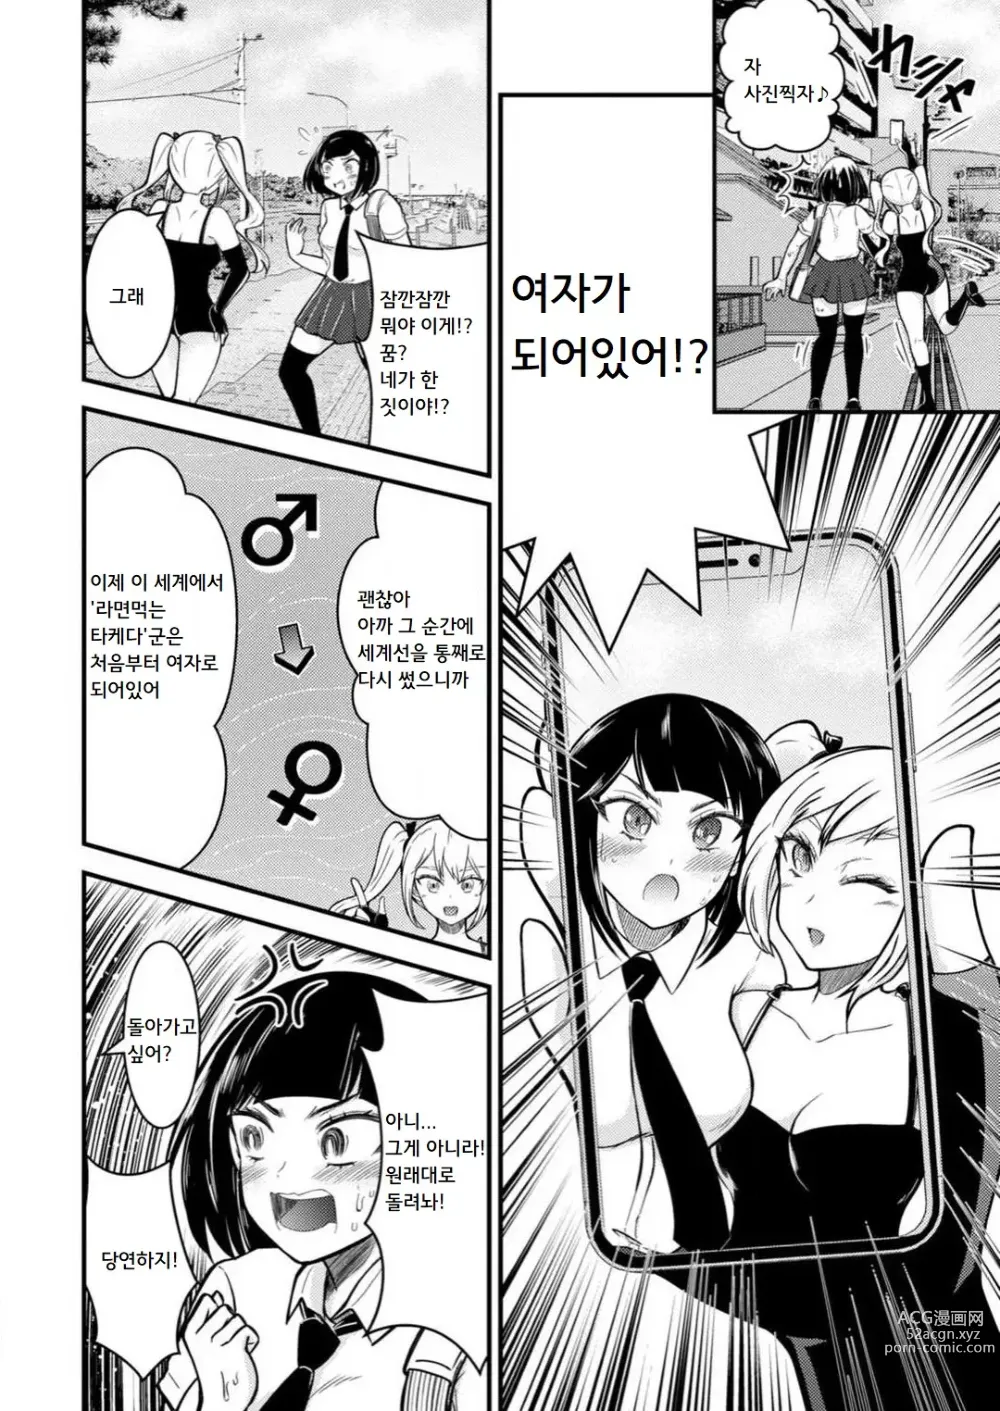 Page 11 of manga 암컷타락한 나의 동정헌팅 일기 ~전 남자인 내가 암컷 구멍에 자지를 기뻐하며 삽입될 때까지~